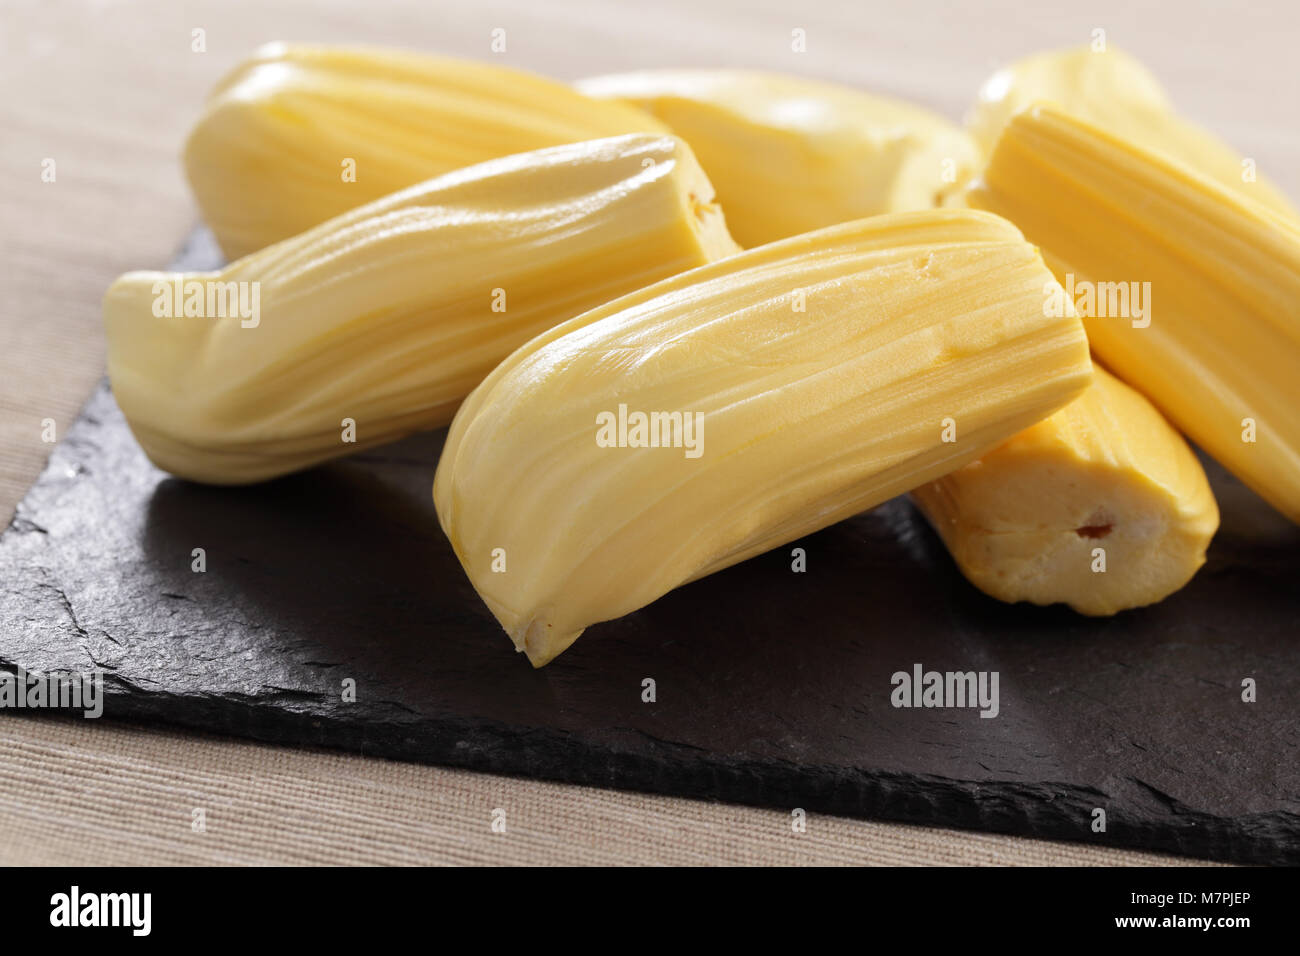 Jackfruit flesh on a kitchen table Stock Photo